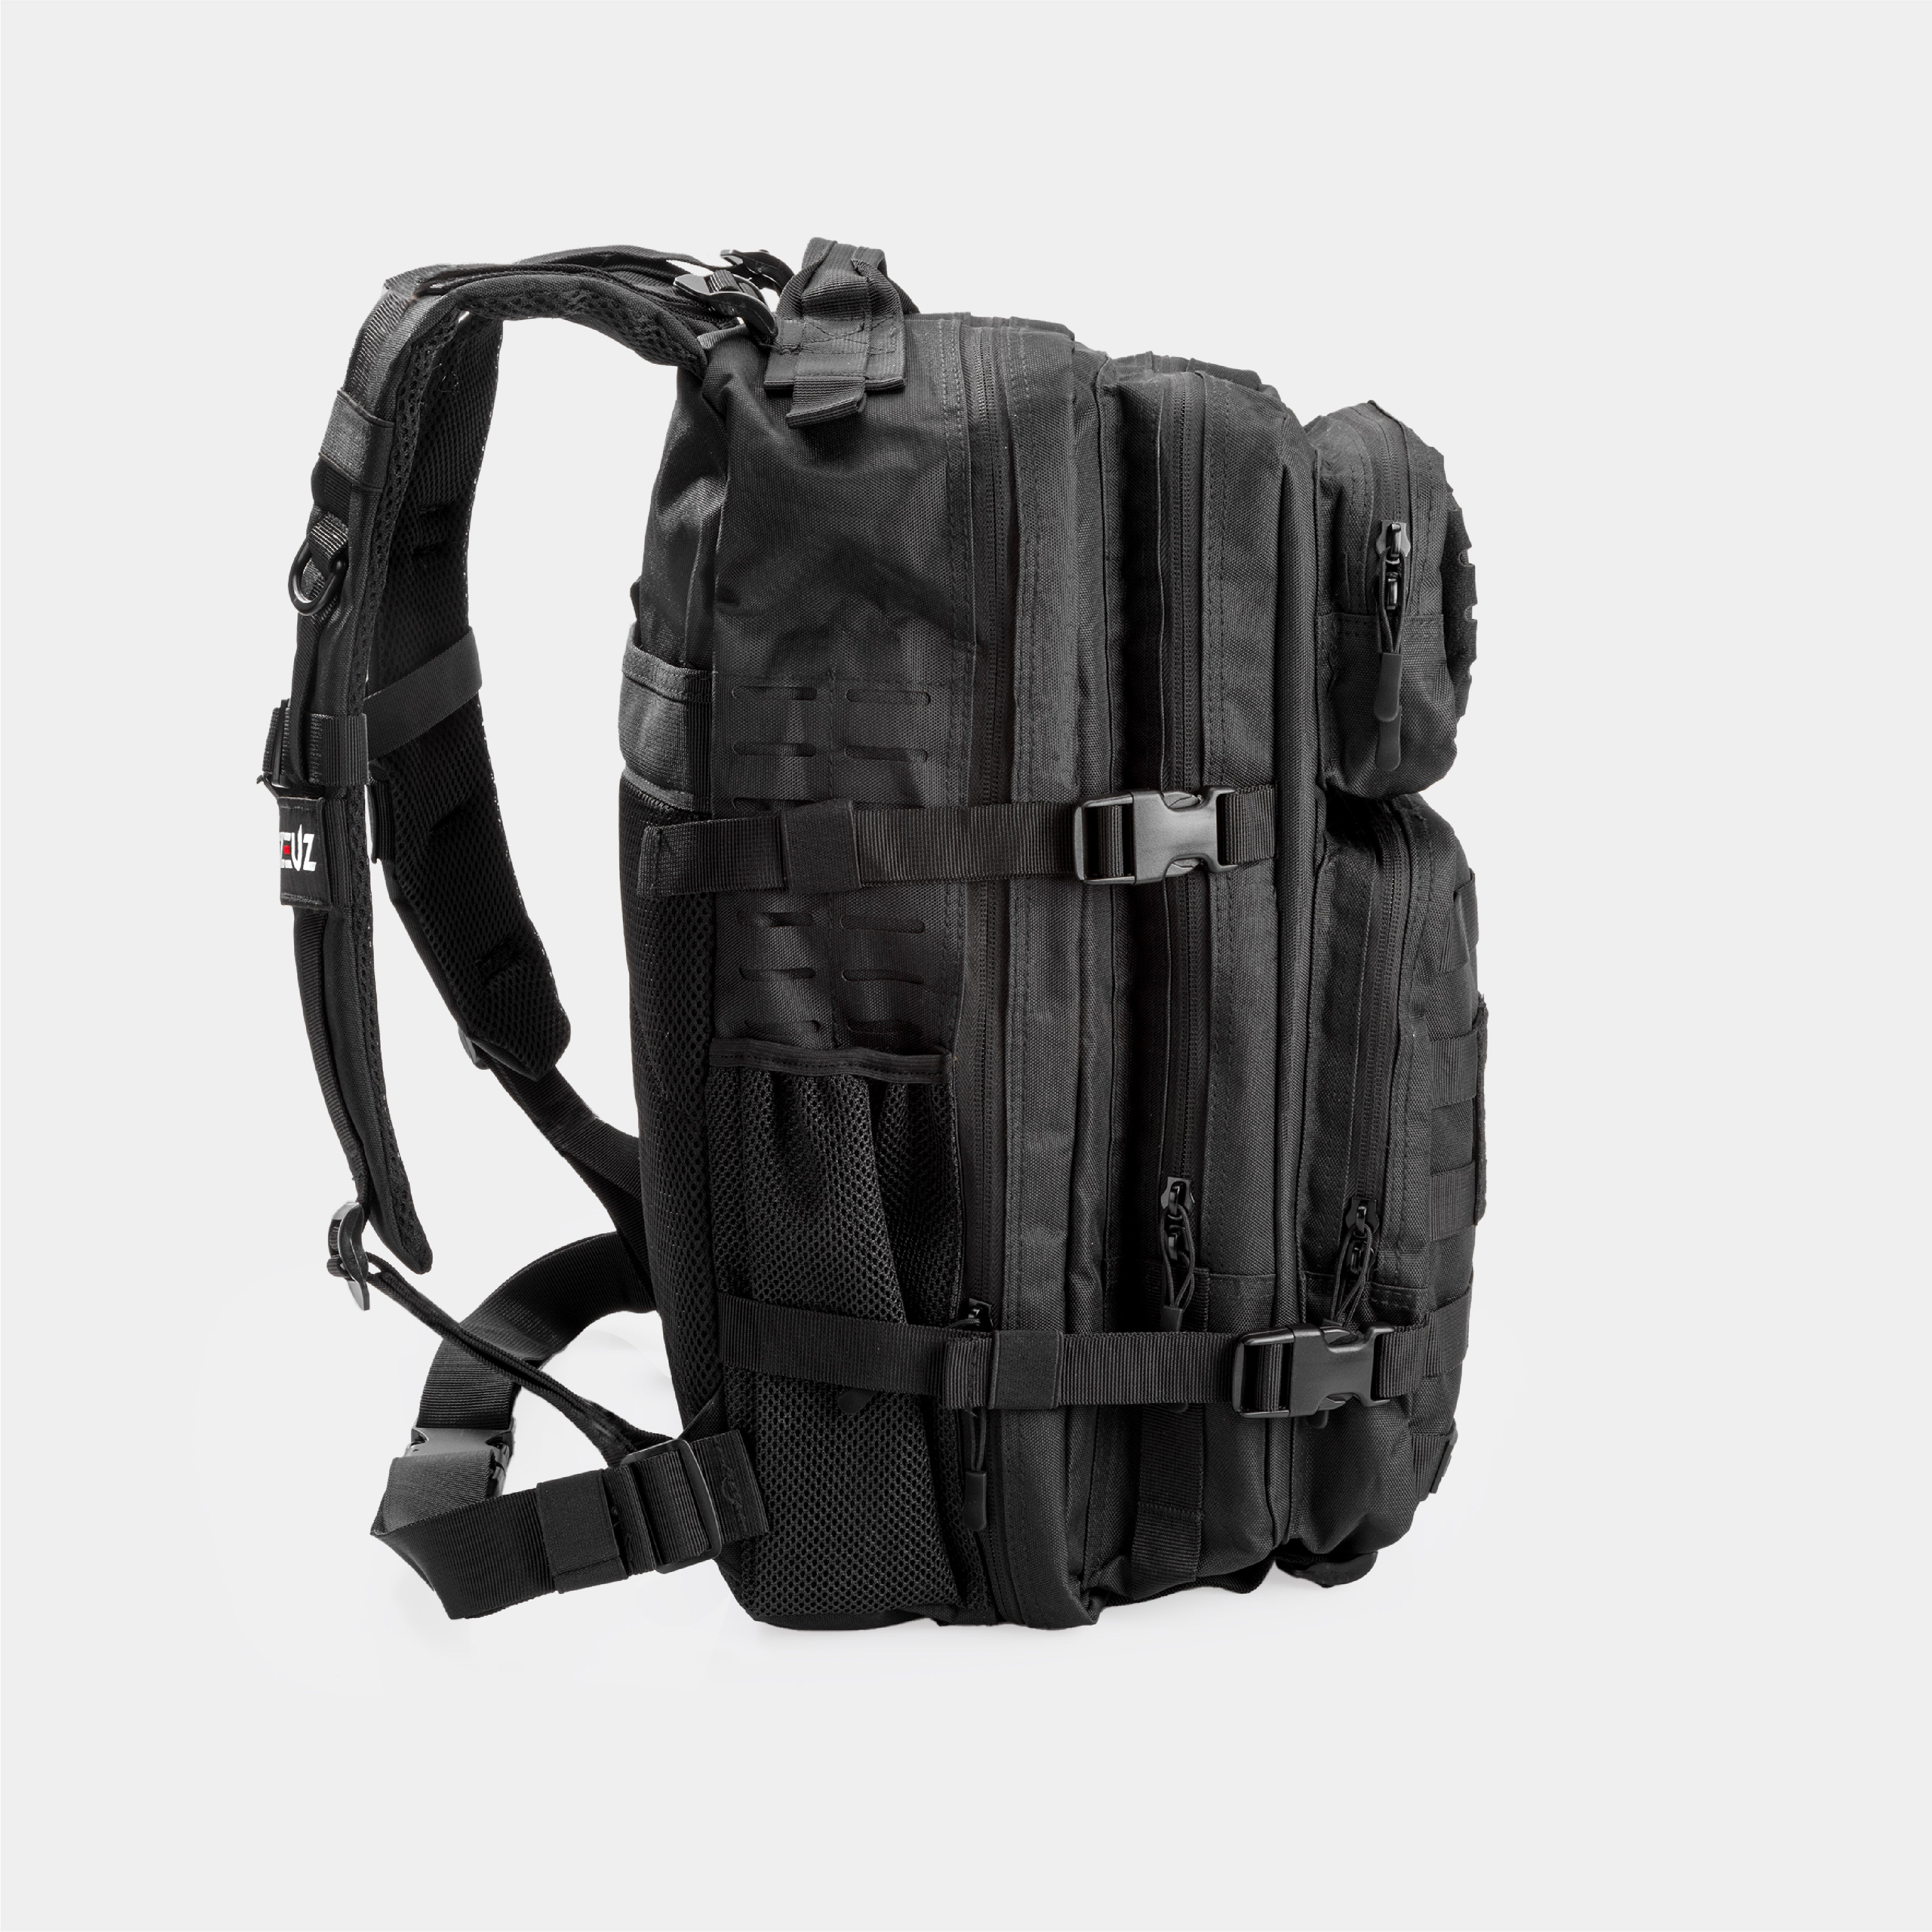 ZEUZ Tactical Backpack - Rucksack - Fitness & CrossFit